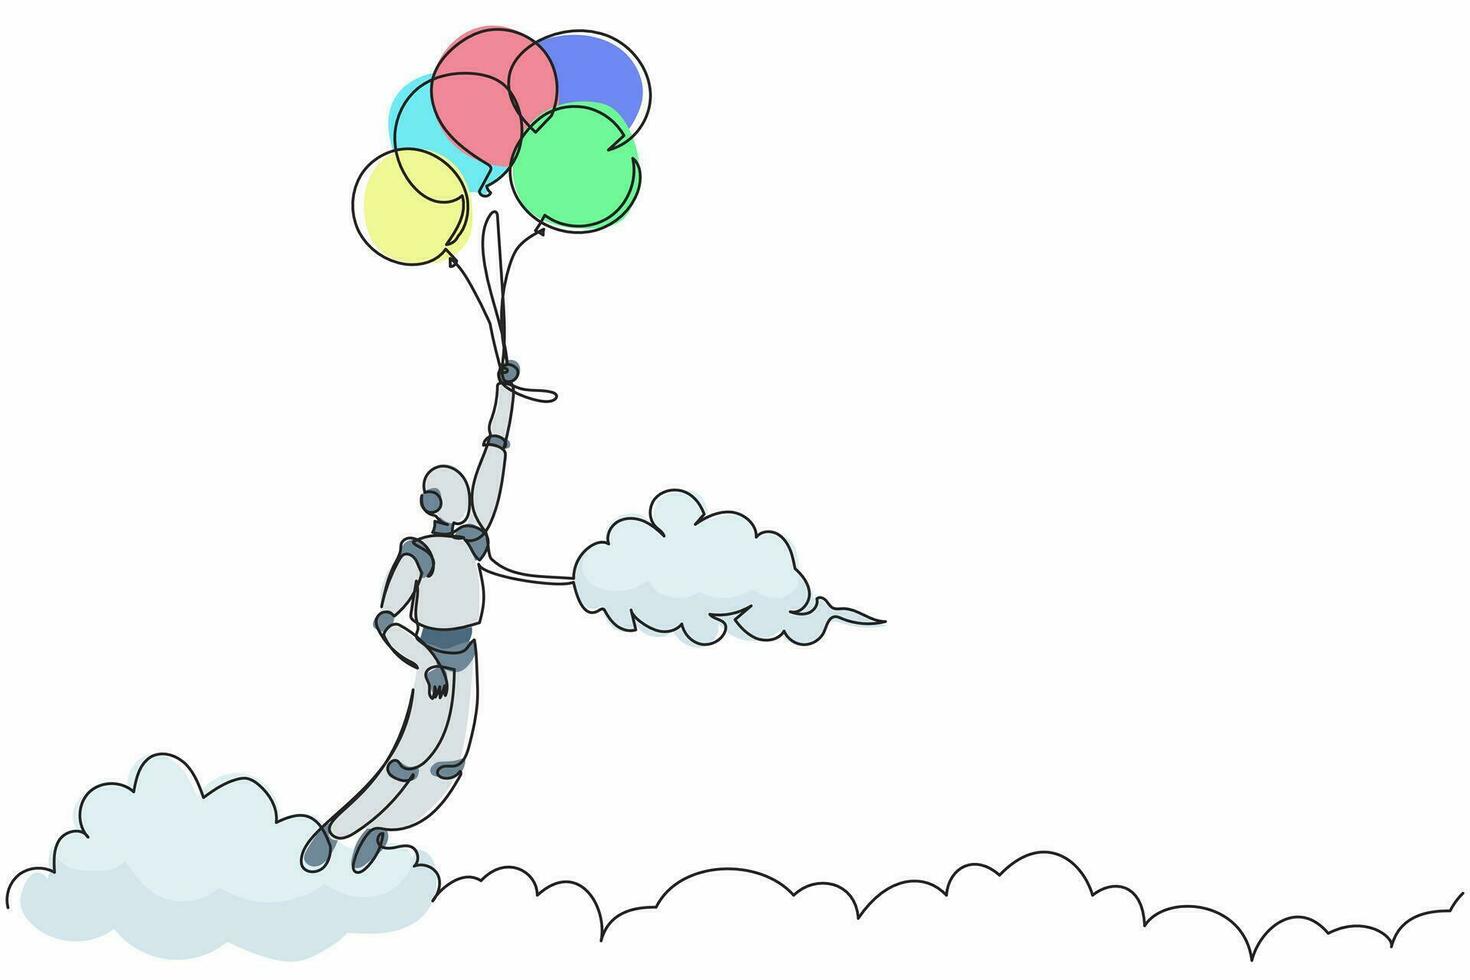 robot de dibujo de una sola línea volando con globo a través de la nube. alcanza la meta, el objetivo, encuentra la solución. desarrollo tecnológico futuro. inteligencia artificial. ilustración de vector de diseño de línea continua